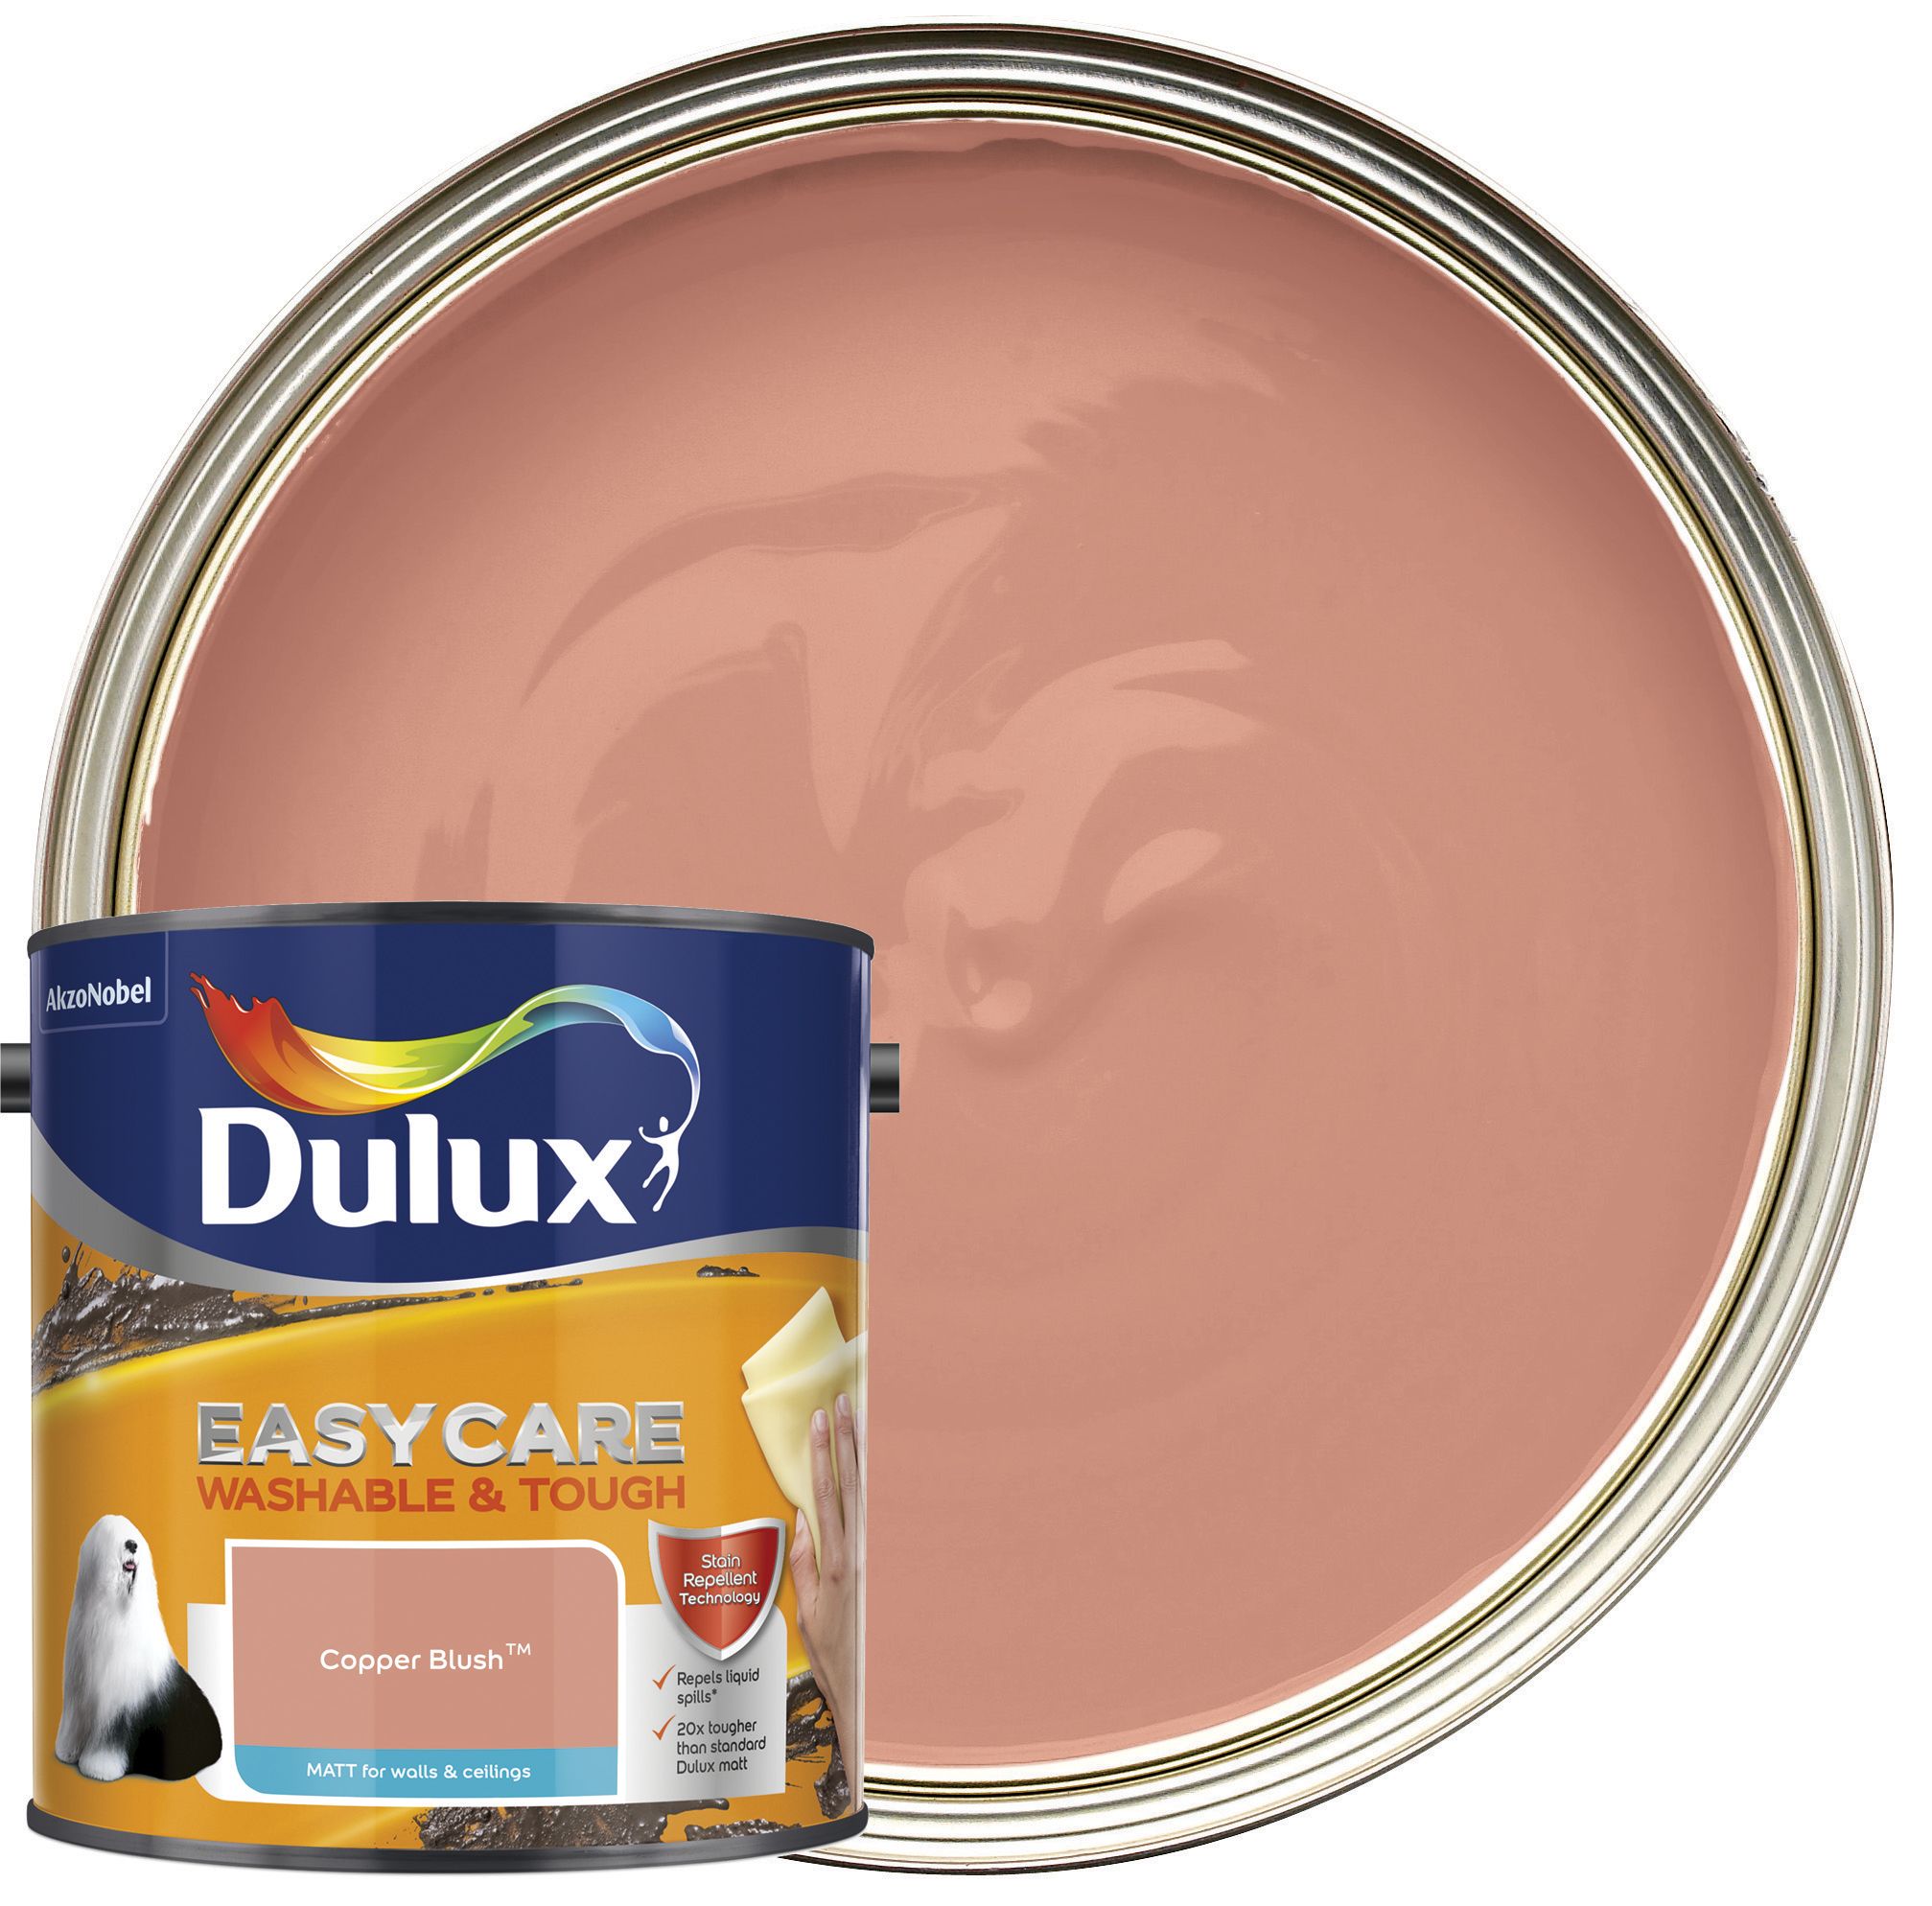 Image of Dulux Easycare Washable & Tough Matt Emulsion Paint - Copper Blush - 2.5L